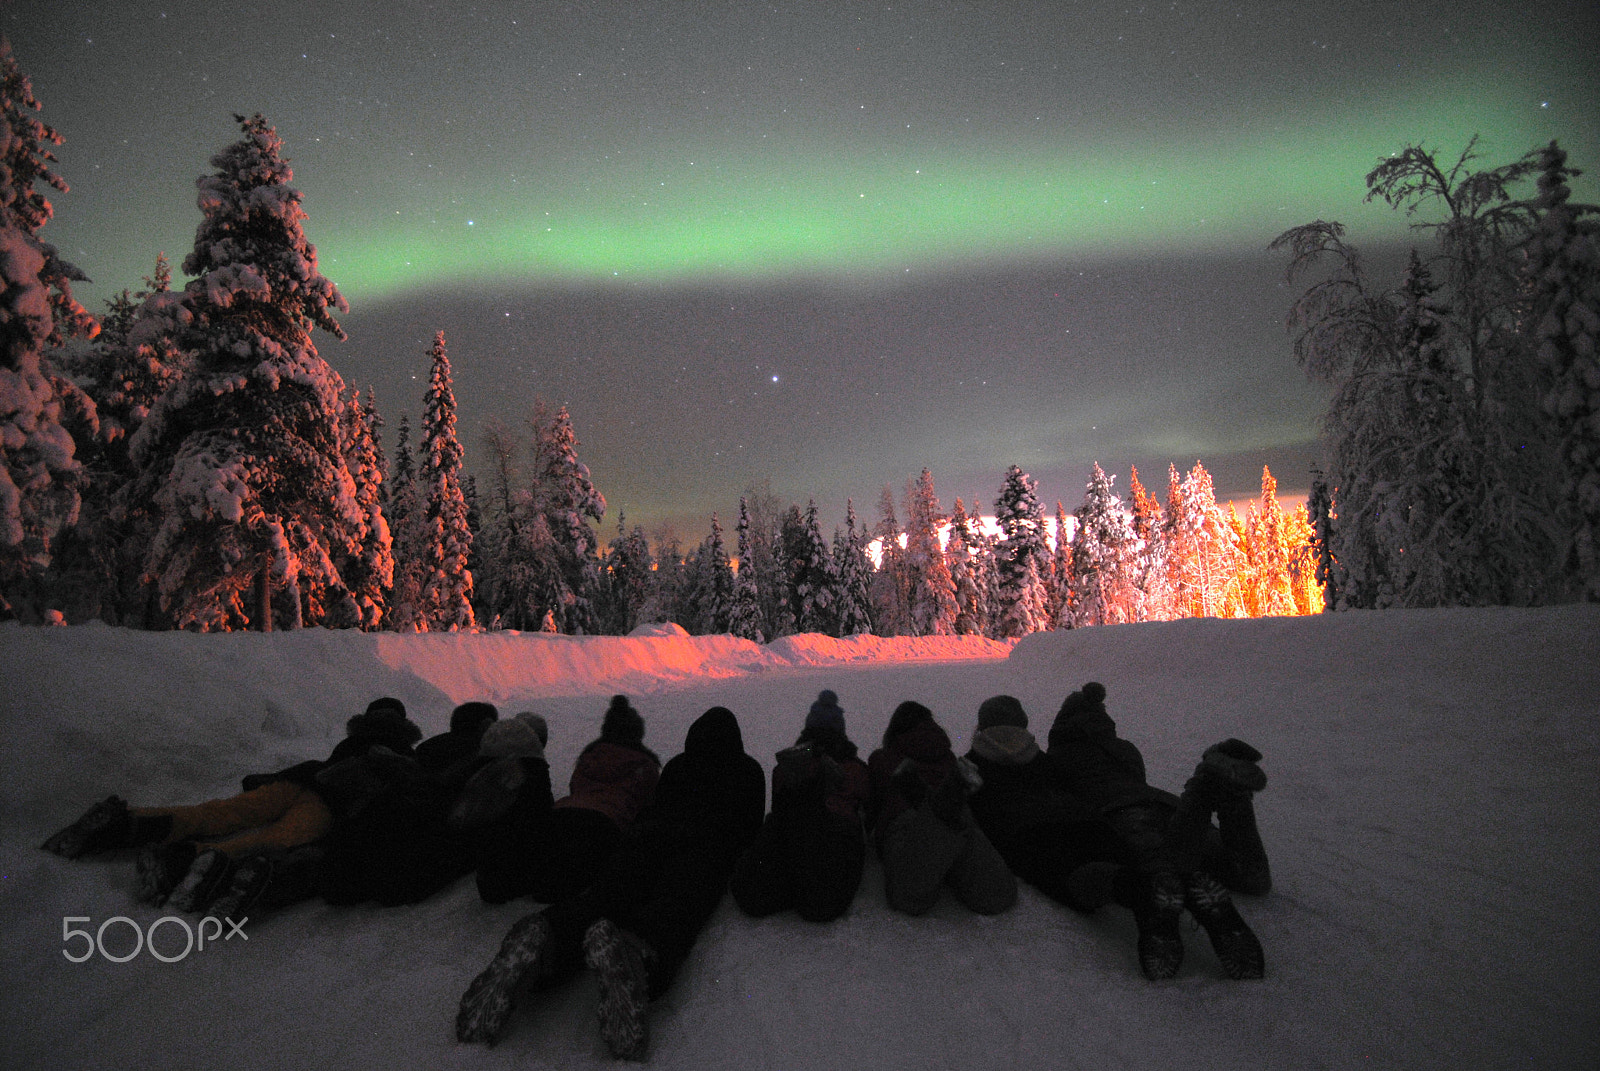 Nikon D3000 + Tamron SP AF 10-24mm F3.5-4.5 Di II LD Aspherical (IF) sample photo. Aurora borealis photography